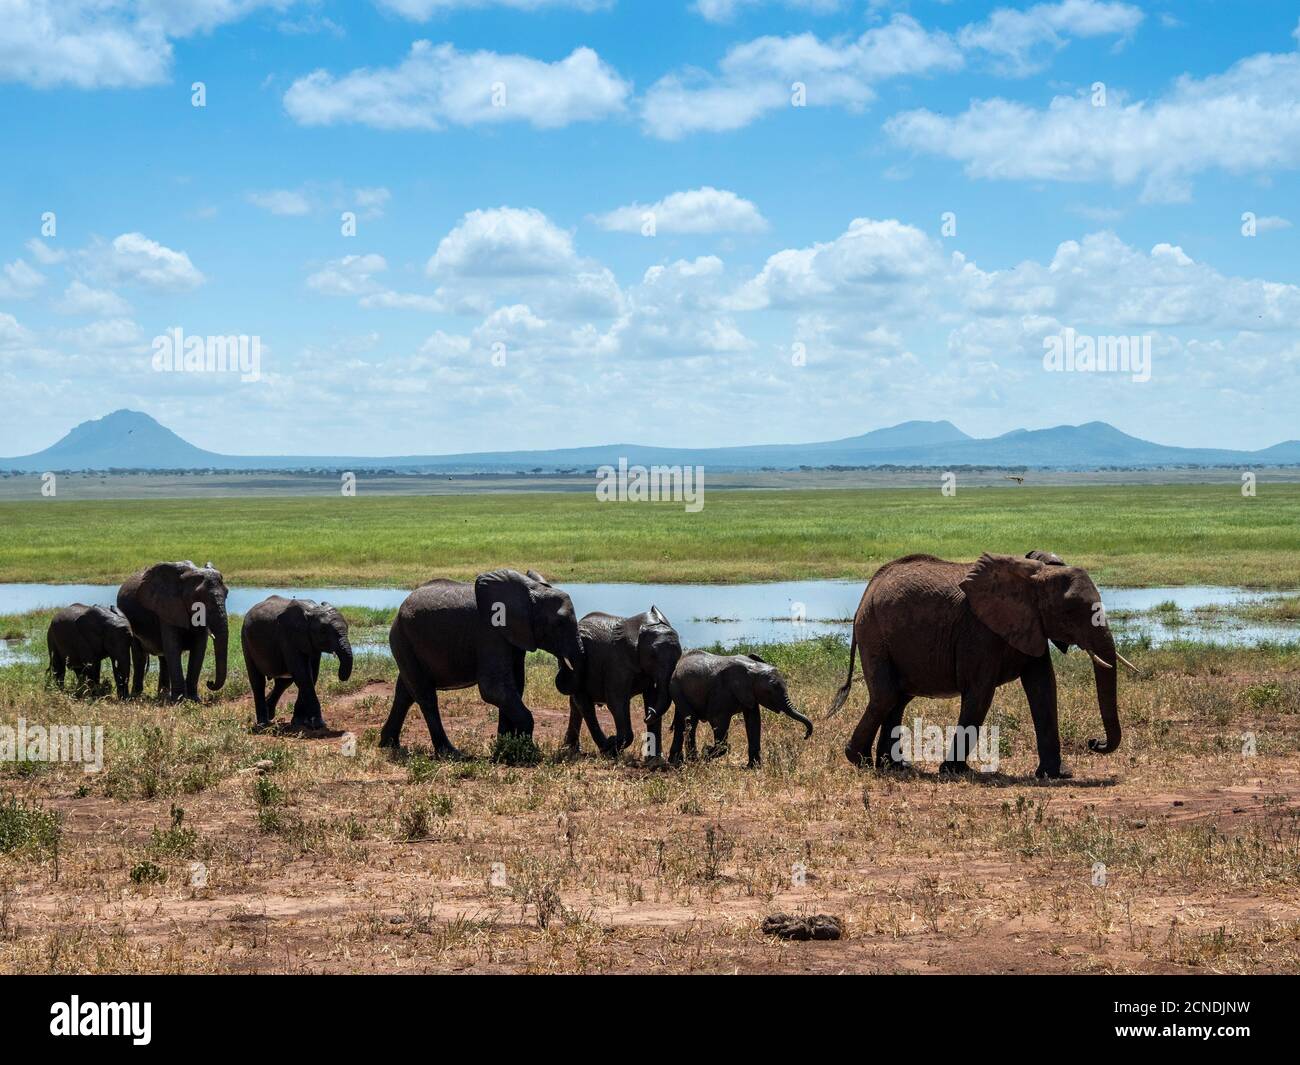 Un troupeau d'éléphants de brousse africains (Loxodonta africana), Parc national de Tarangire, Tanzanie, Afrique de l'est, Afrique Banque D'Images